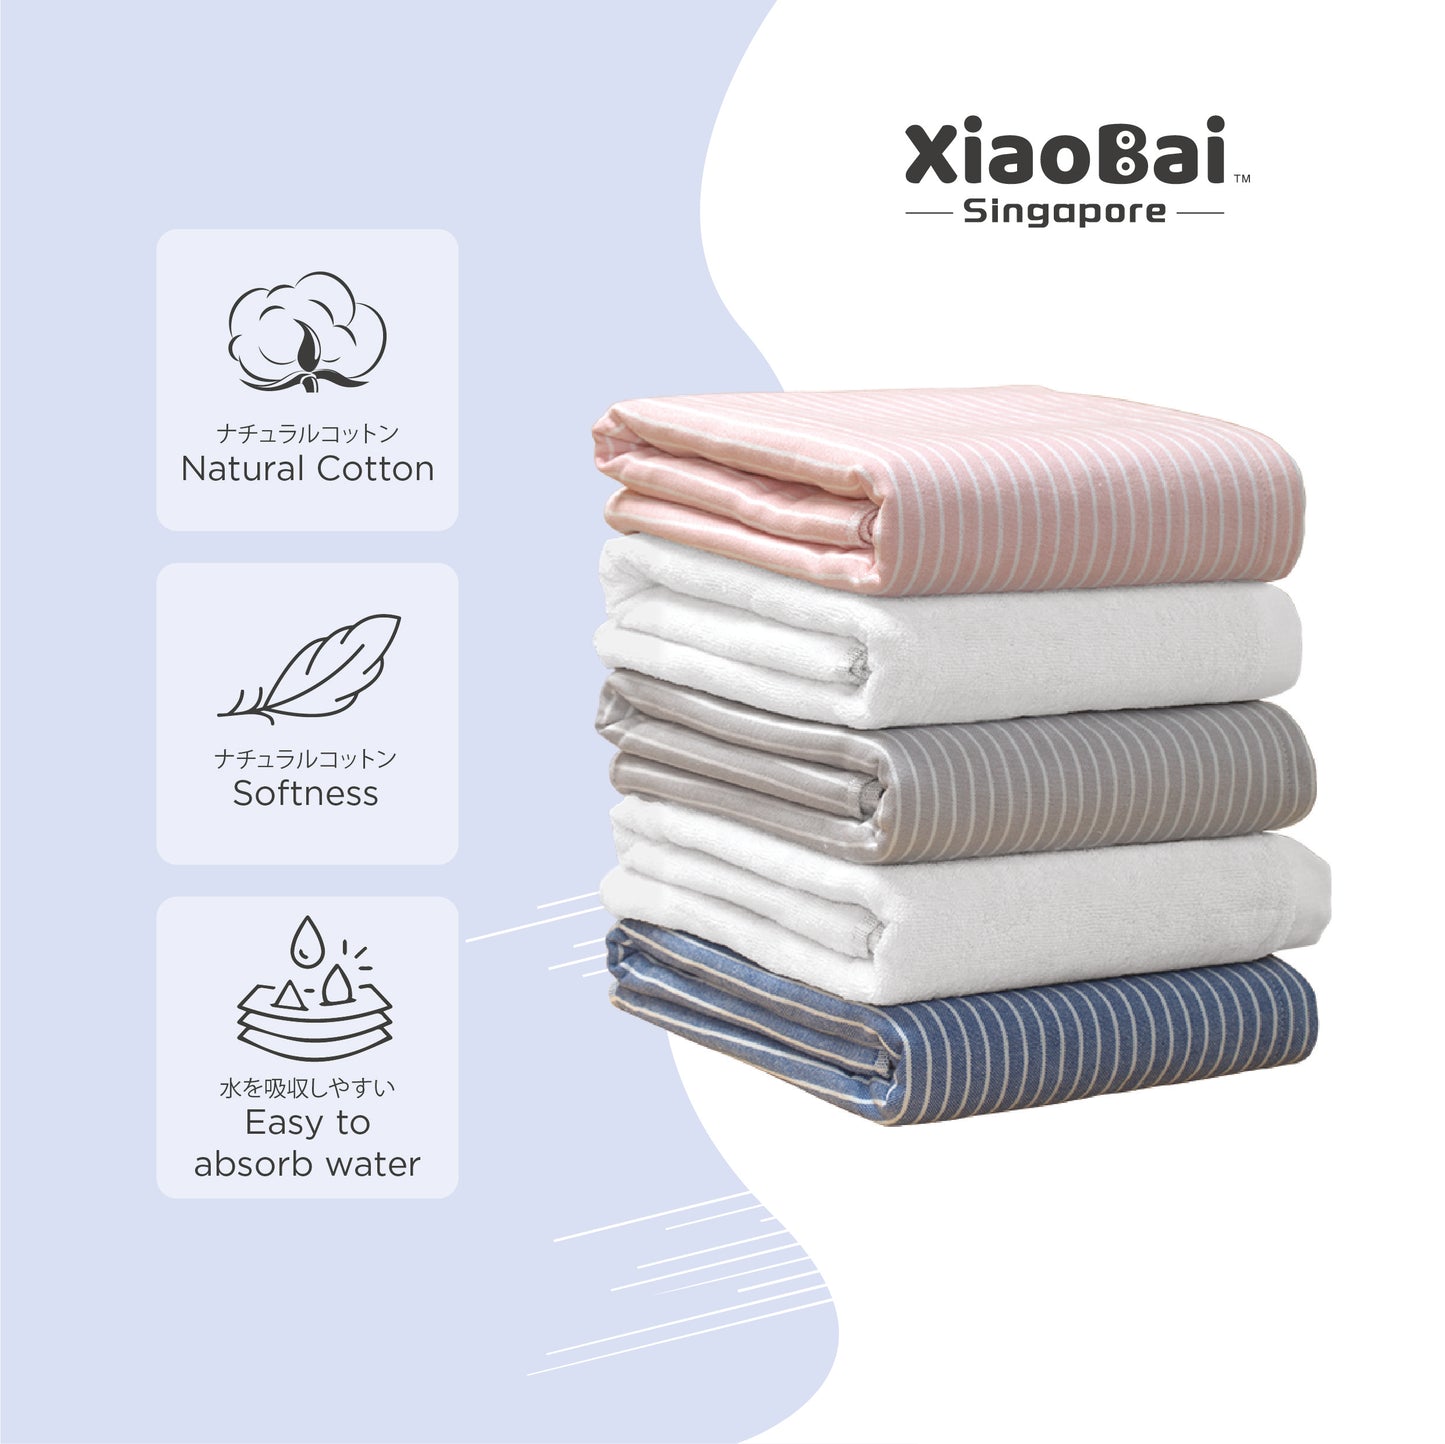 100% Premium Cotton Stripes Bath Towel <PRO>